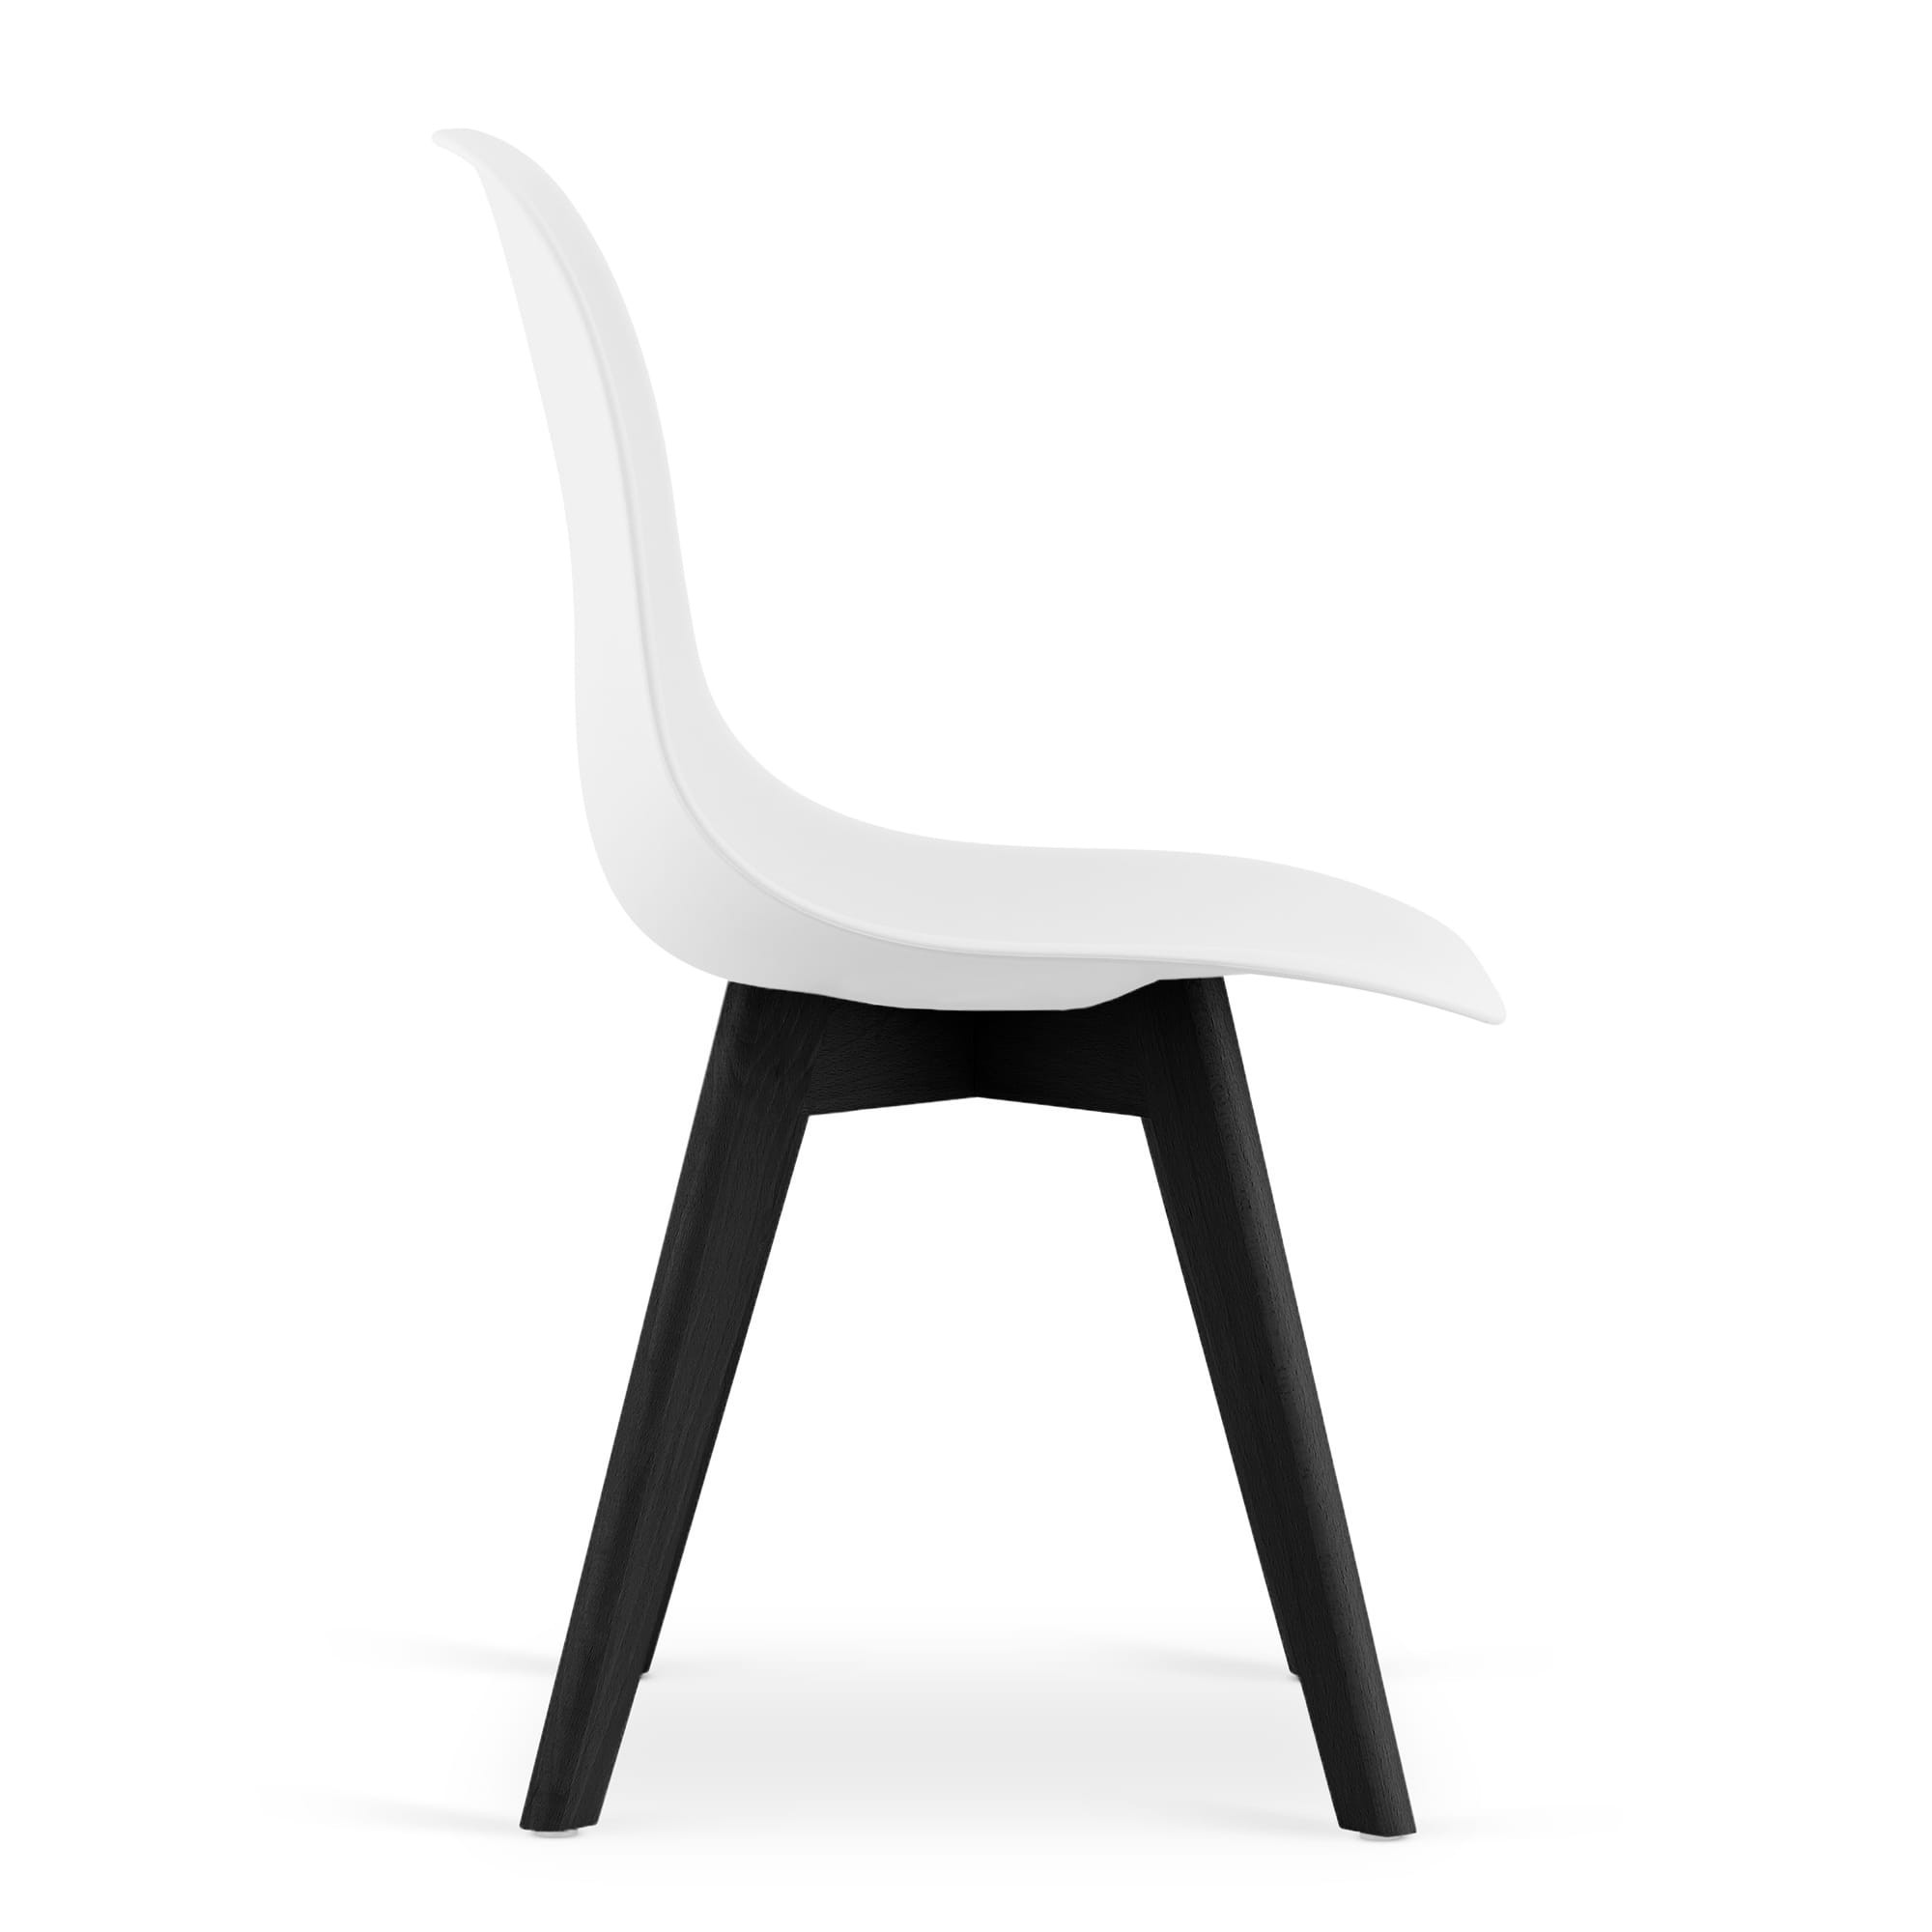 Jedálenská stolička KITO biela (čierne nohy) 